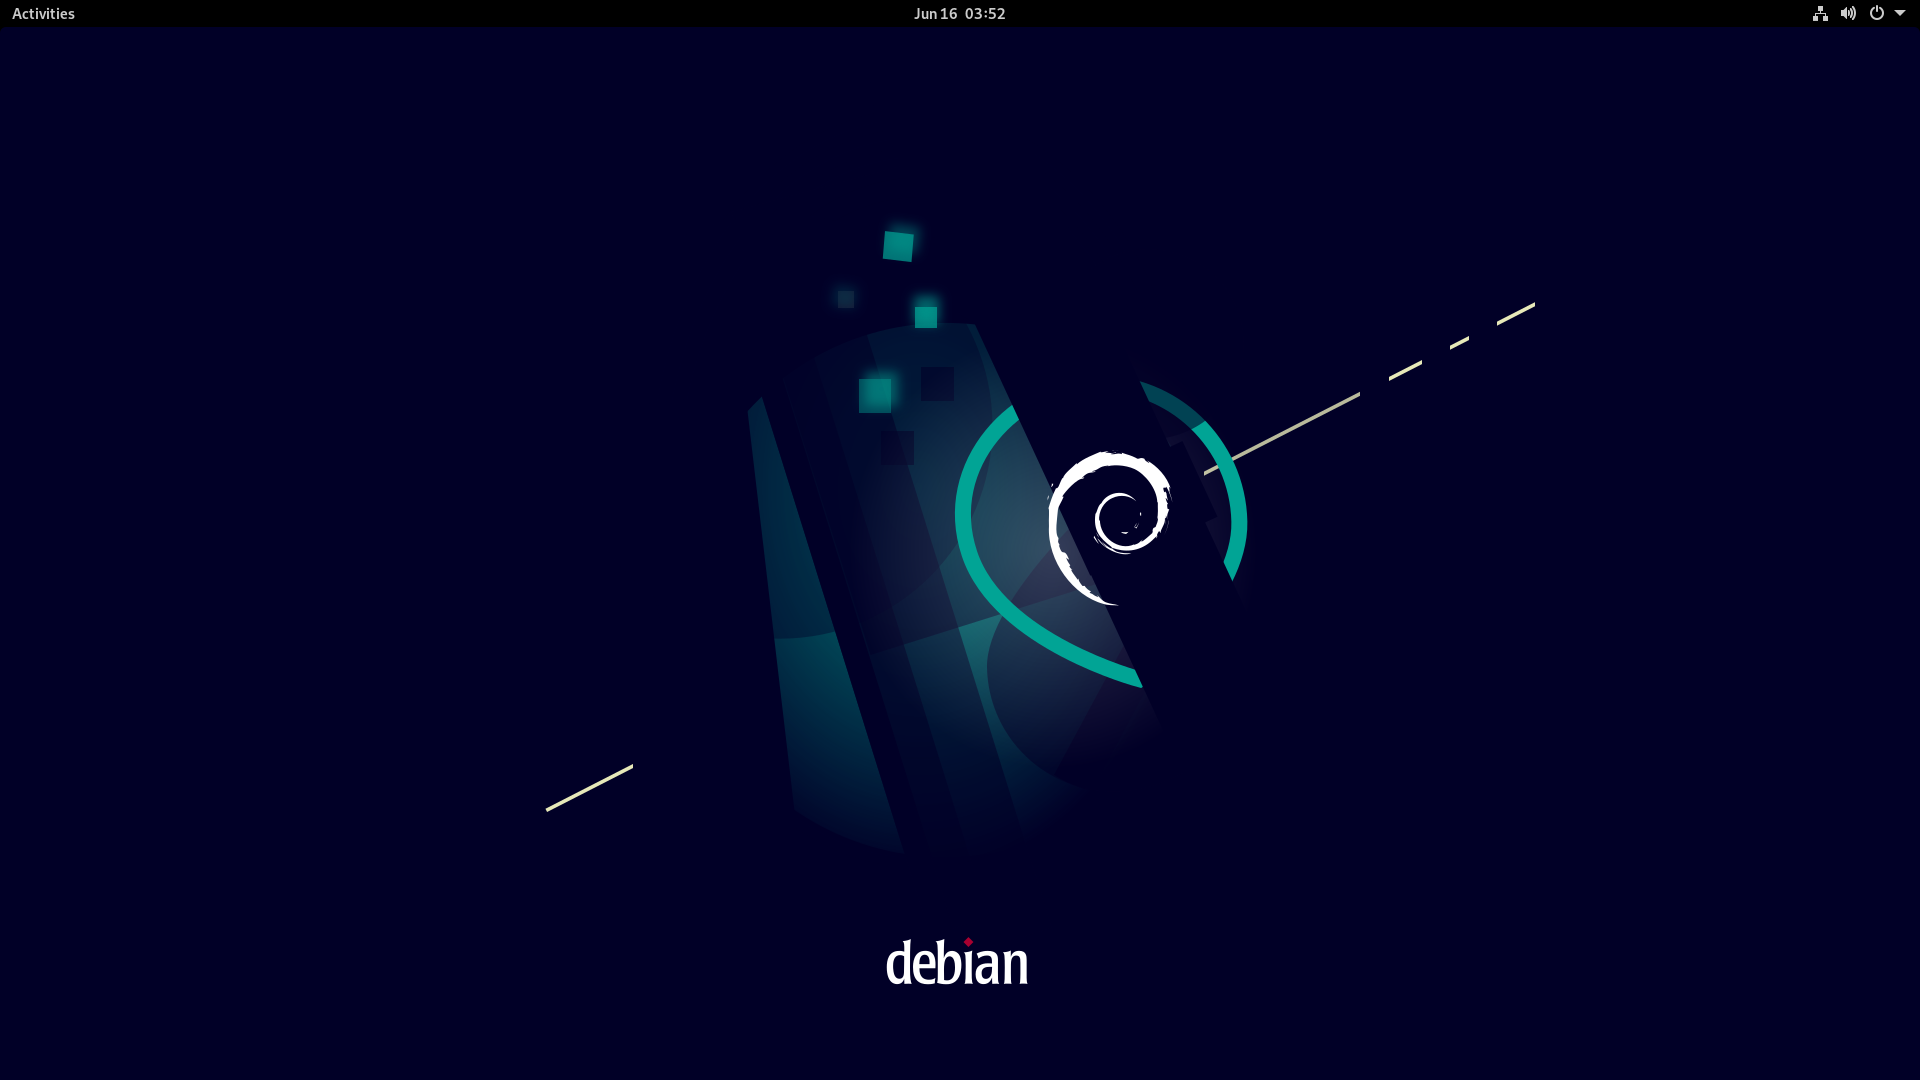 _images/DebianMain.png